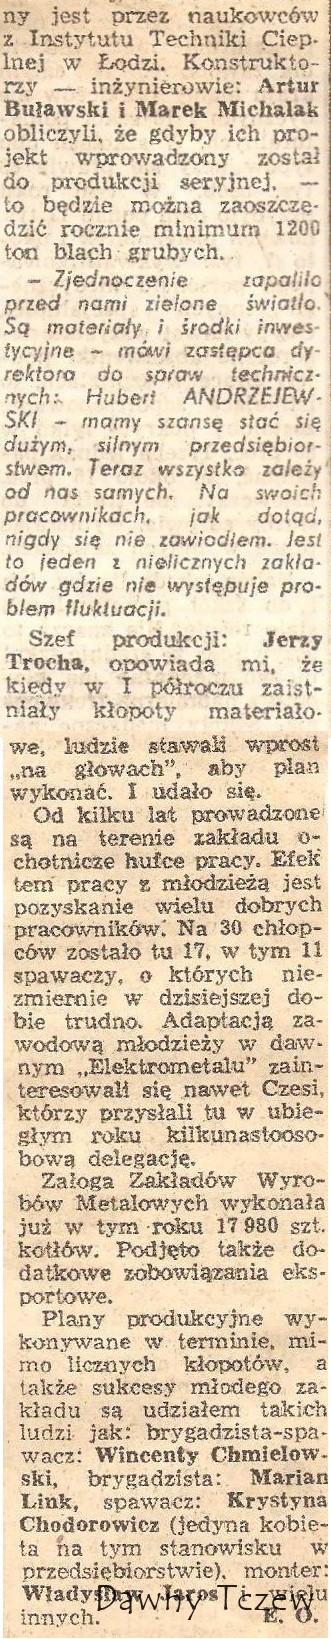 Dziennik Bałtycki, 17.11.1975 r.....jpg